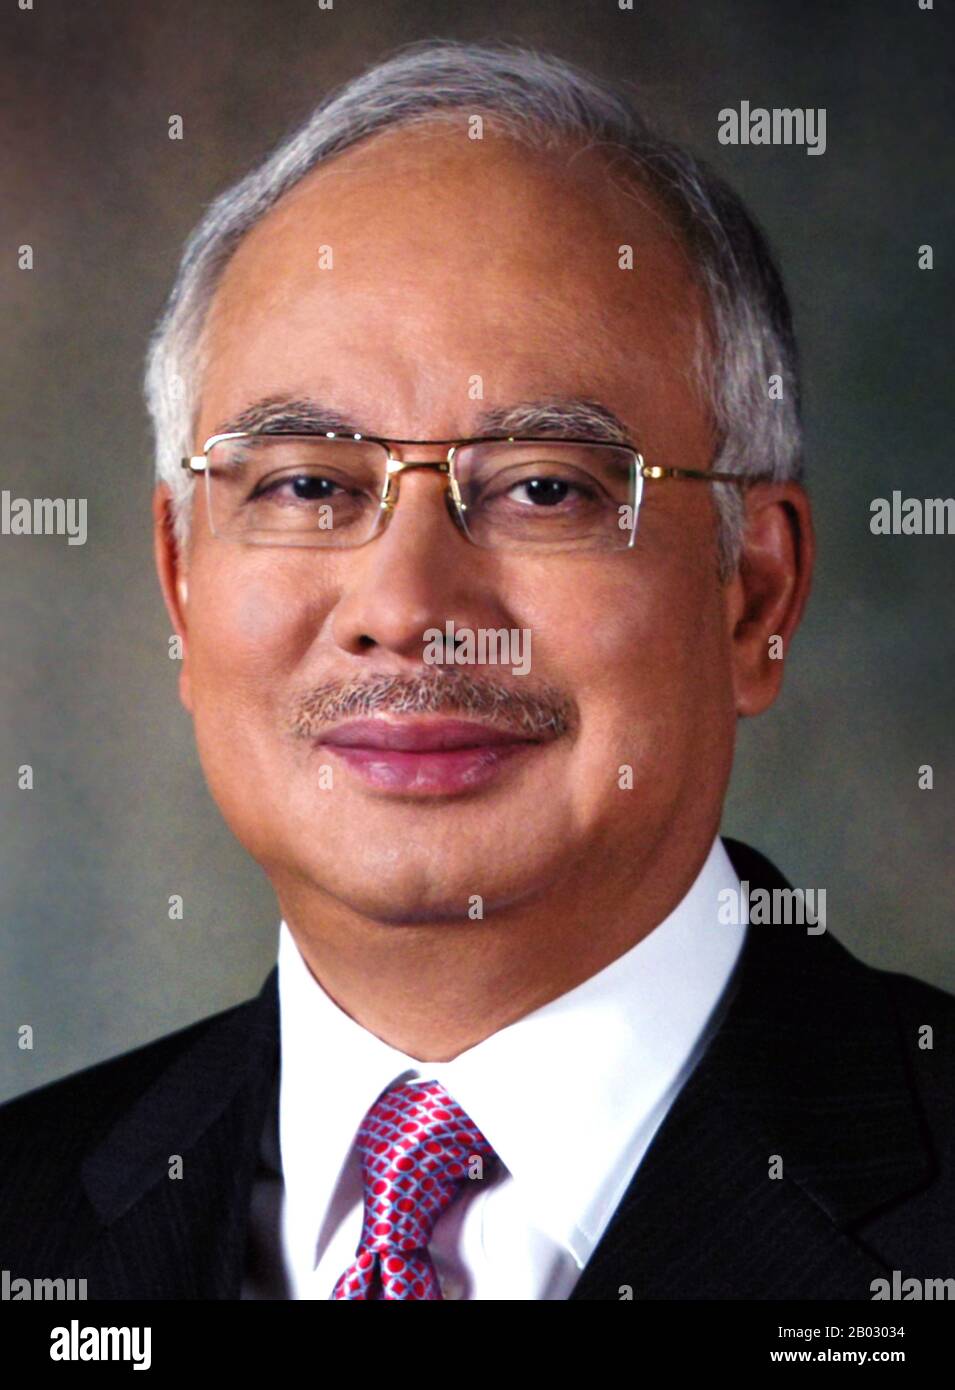 Dato' Sri Haji Mohammad Najib bin Tun Haji Abdul Razak (nacido el 23 de julio de 1953) es el sexto y actual primer Ministro de Malasia. El 3 de abril de 2009 juró el cargo de sucesor de Abdullah Ahmad Badawi. Es el Presidente de la Organización Nacional Malays Unidos, el partido líder en la coalición gobernante Barison Nasional de Malasia. Foto de stock